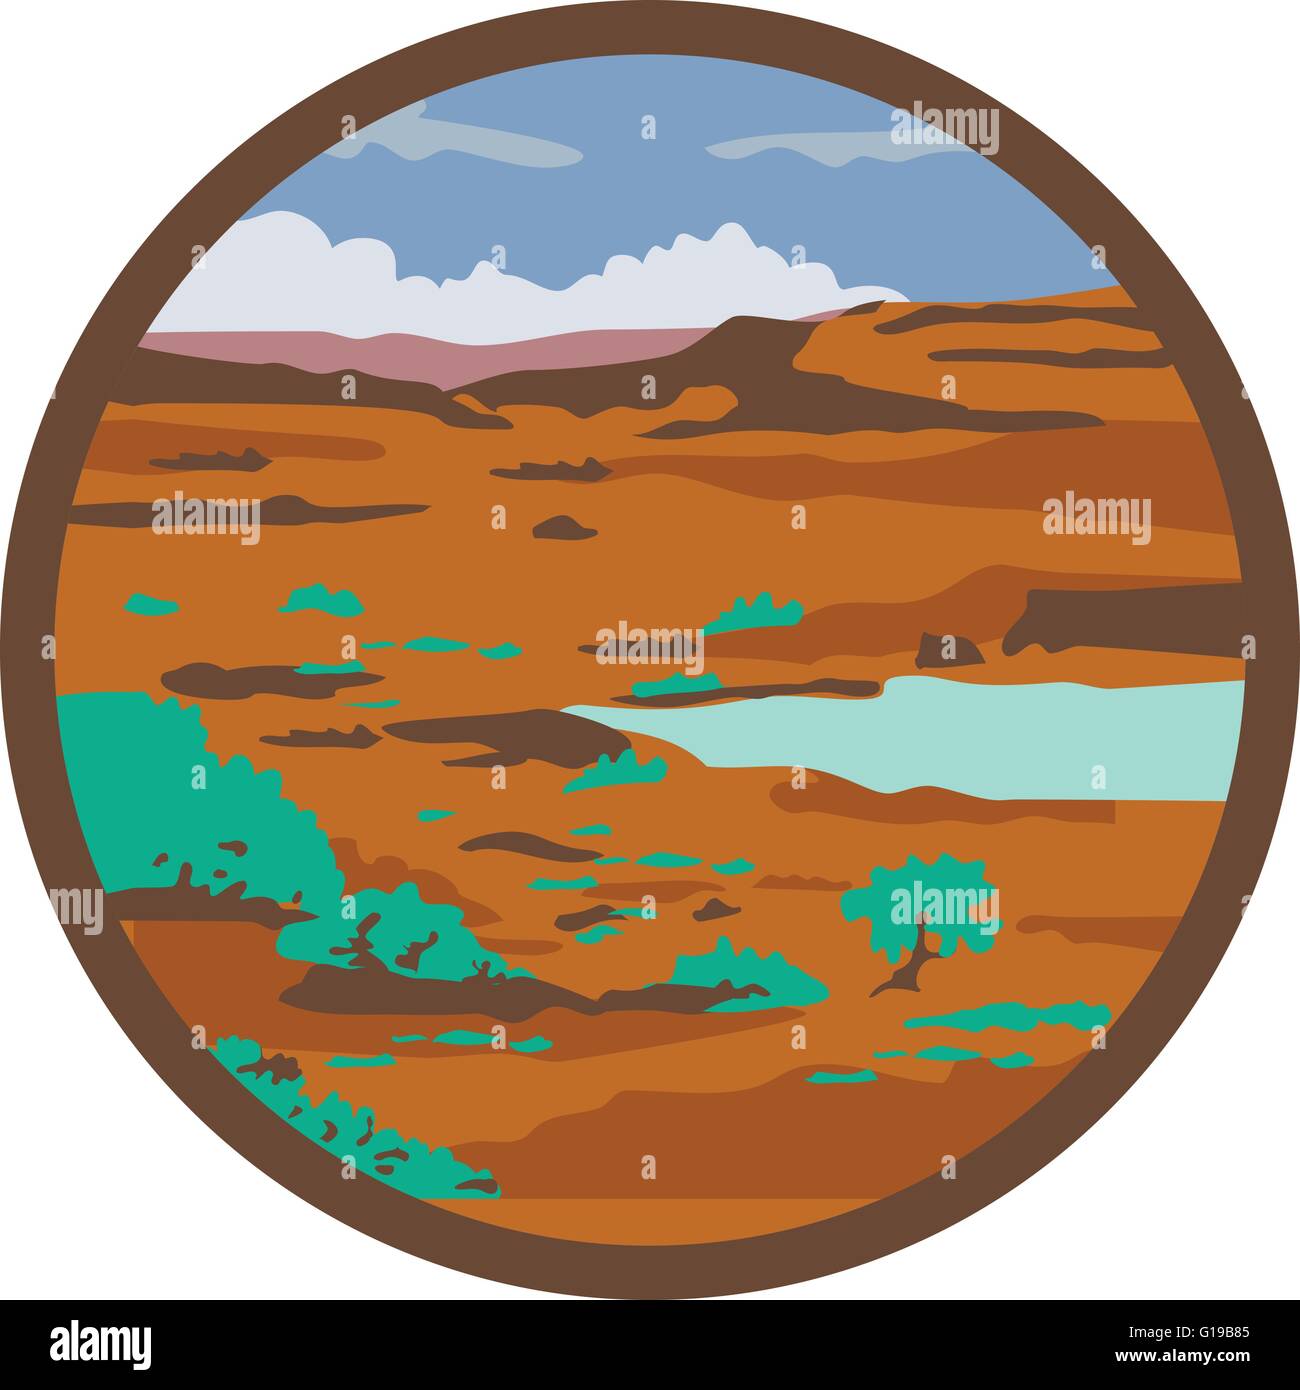 Illustrazione di un deserto o steppa arida con il bacino del lago insieme all'interno del cerchio fatto in stile retrò. Illustrazione Vettoriale